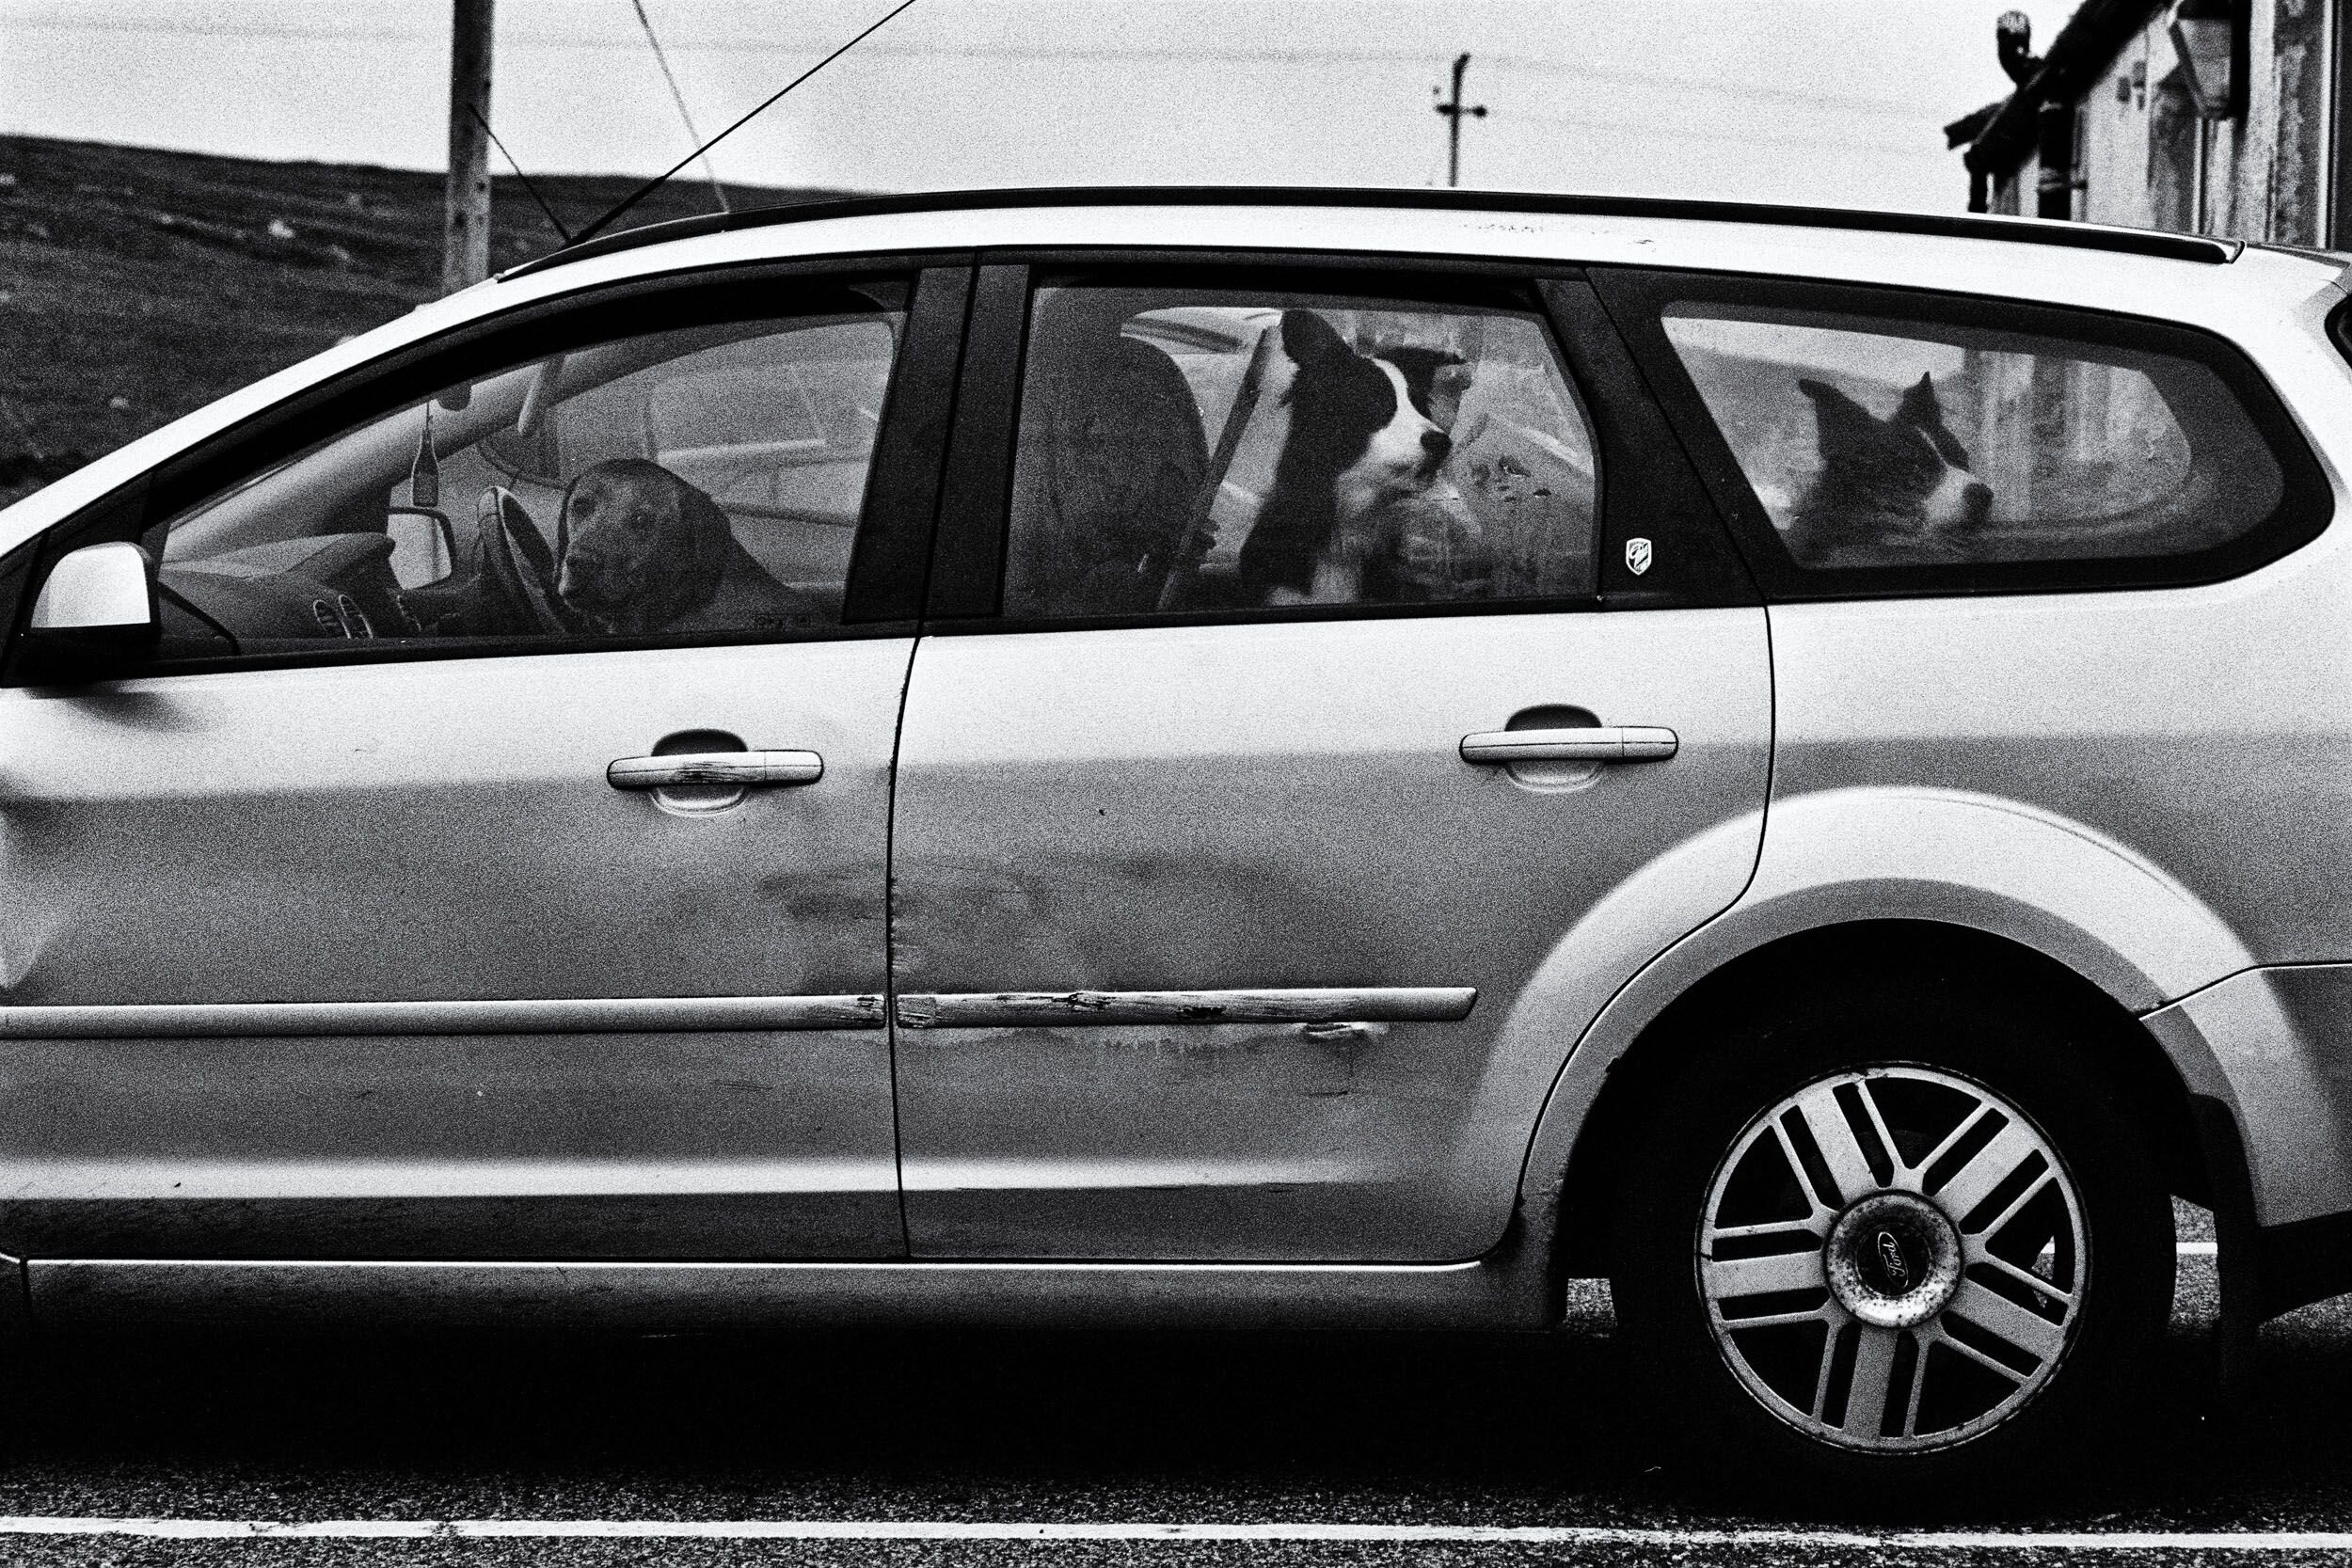  Three Dogs in a Car, Sollas, Lochmaddy, North Uist, 2019 